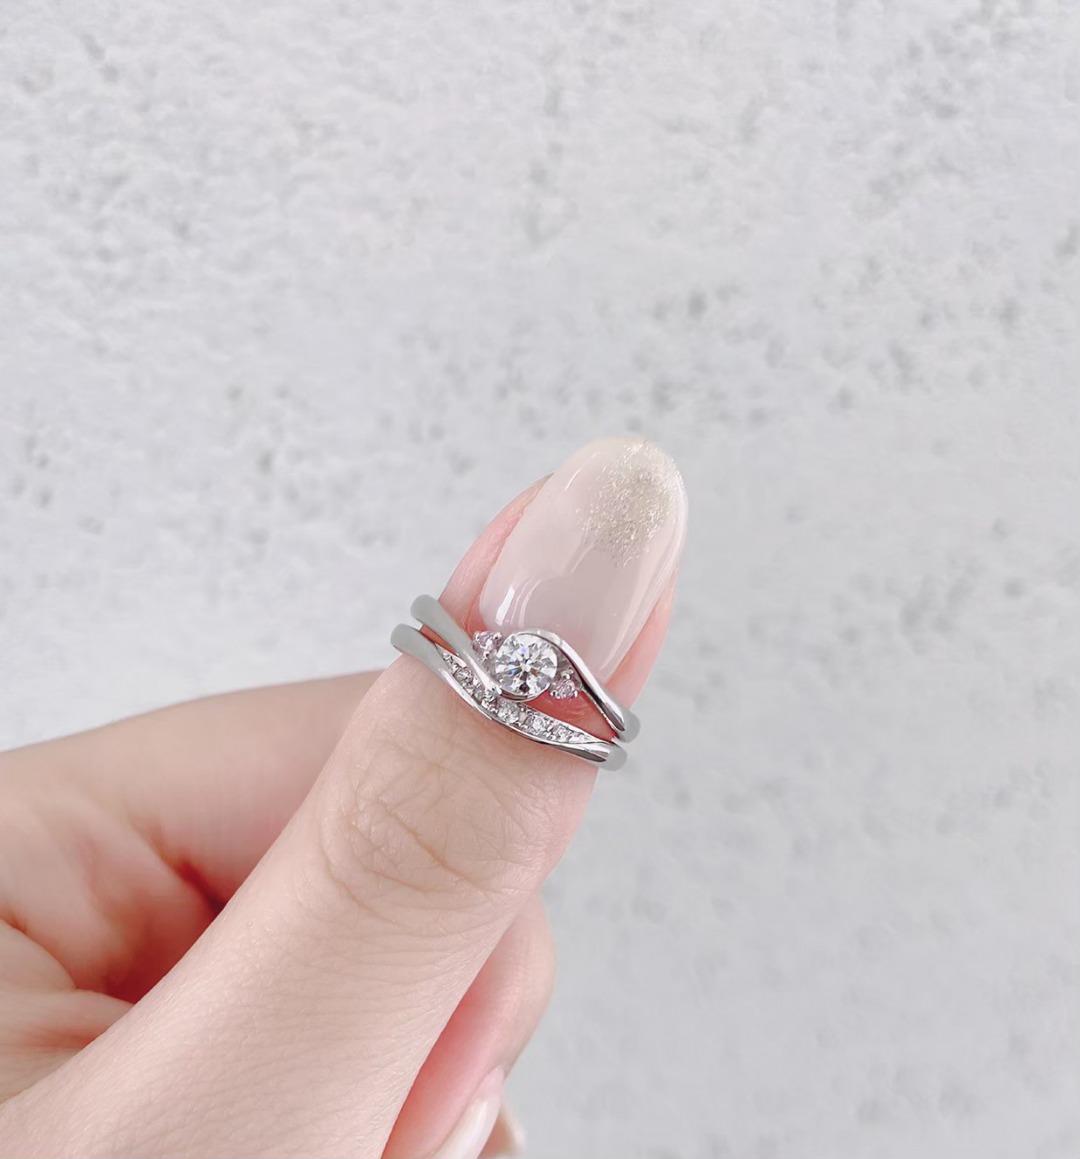 銀座で人気の薔薇がモチーフの可愛ピンクダイヤモンドの婚約指輪